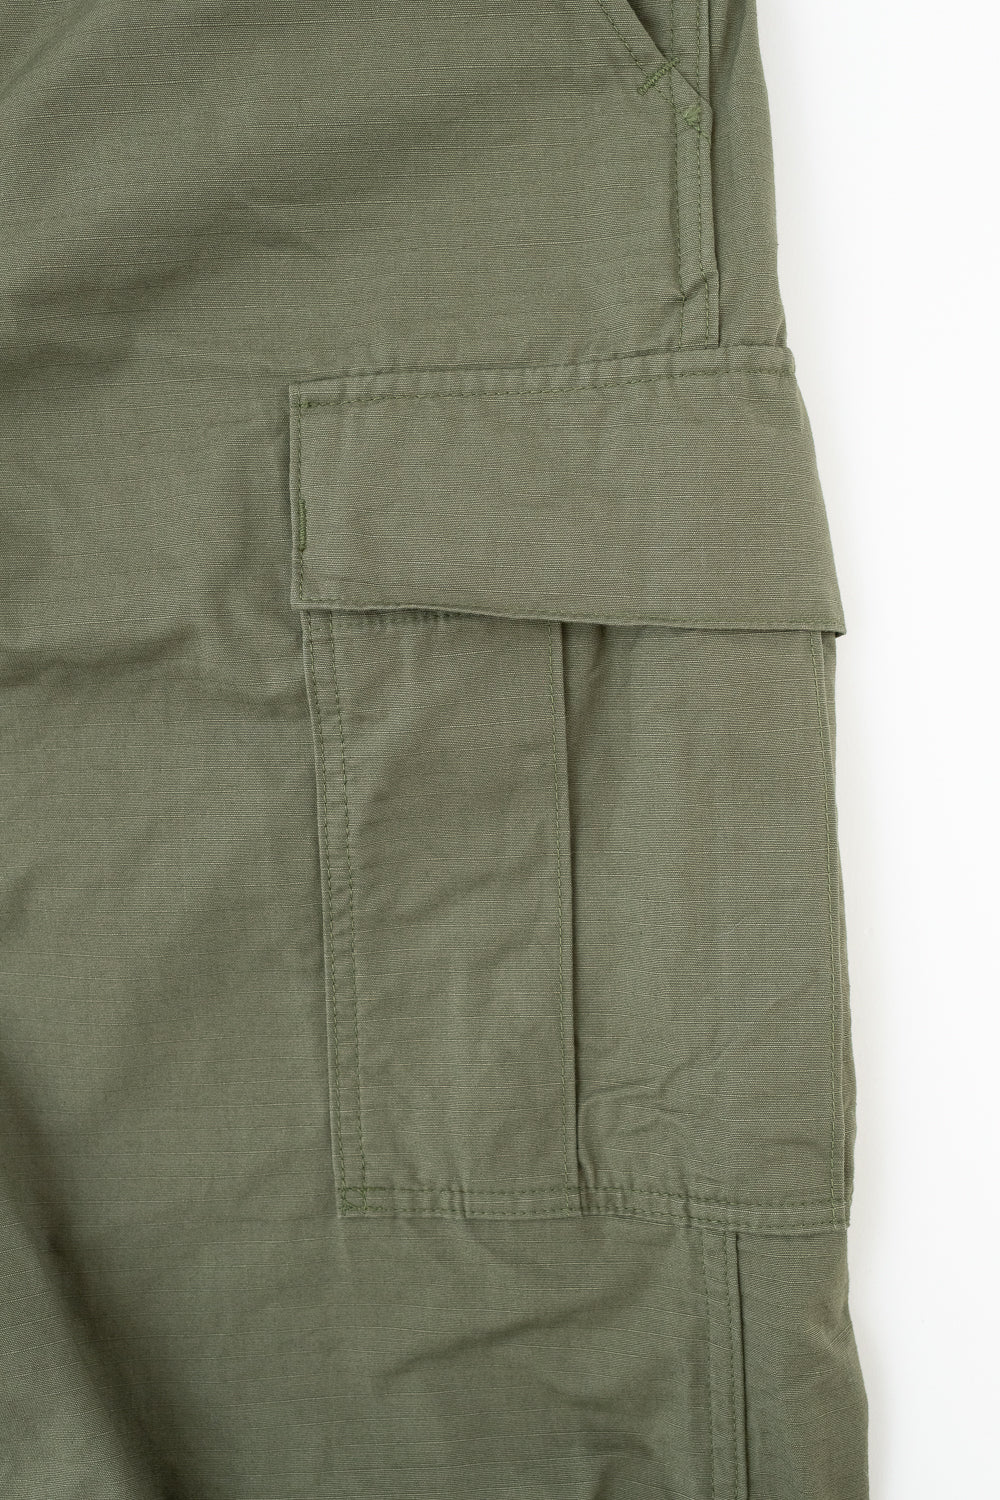 03-V5260RIP-76 - 6-Pocket Cargo Trousers - Vintage Fit - Olive